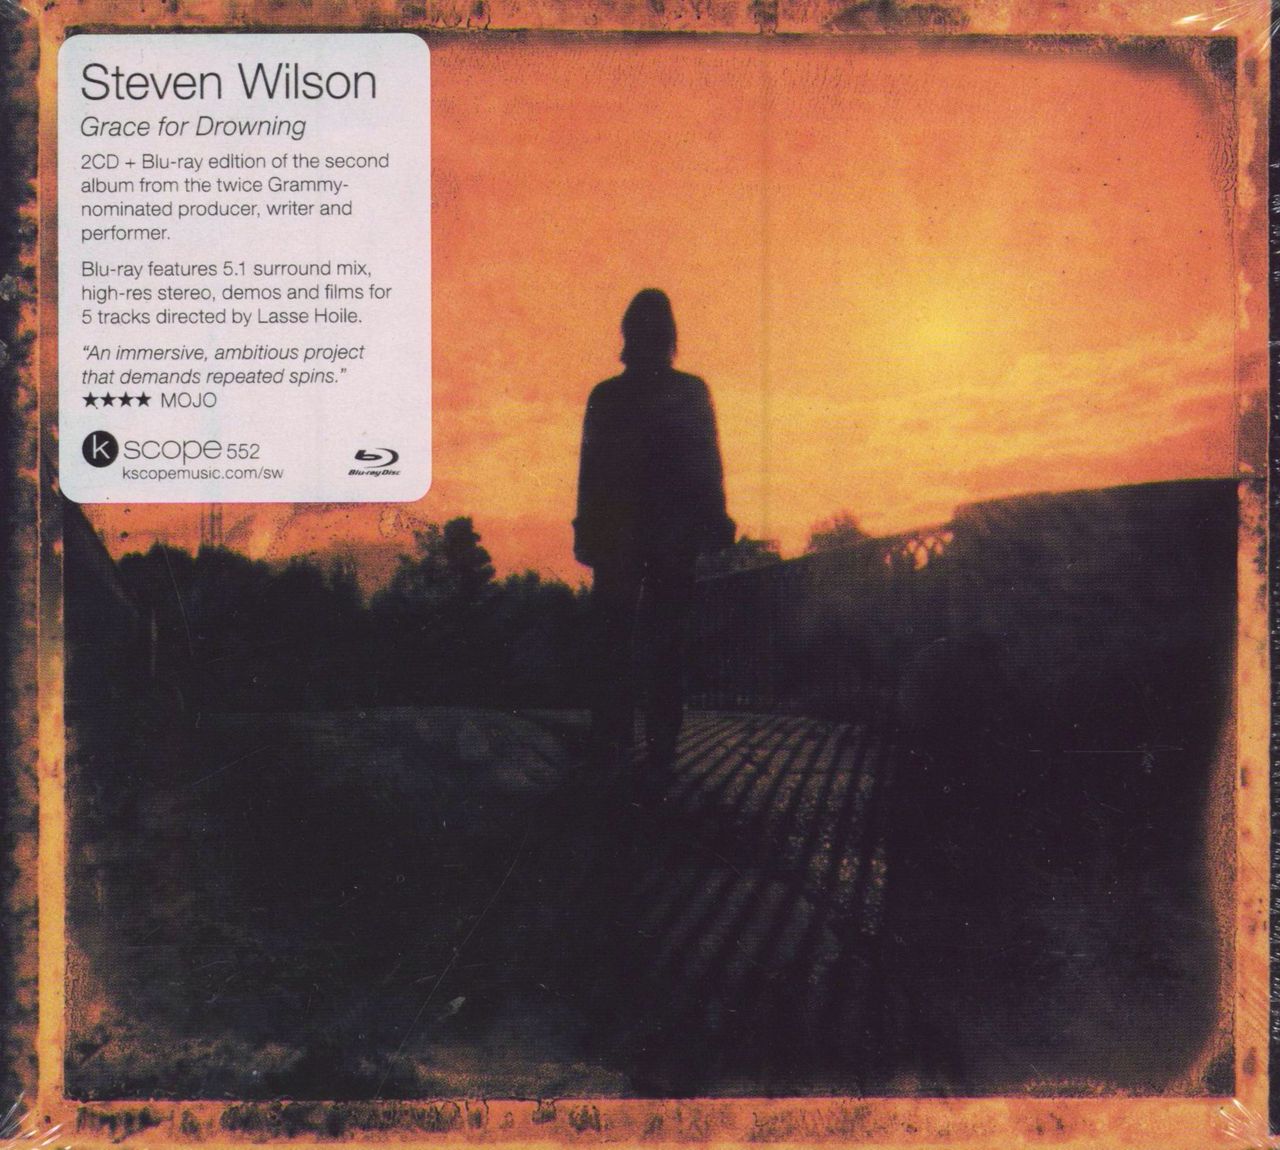 Steven Wilson Grace For Drowning + Blu-Ray - Sealed UK 2 CD album set (Double CD) KSCOPE552